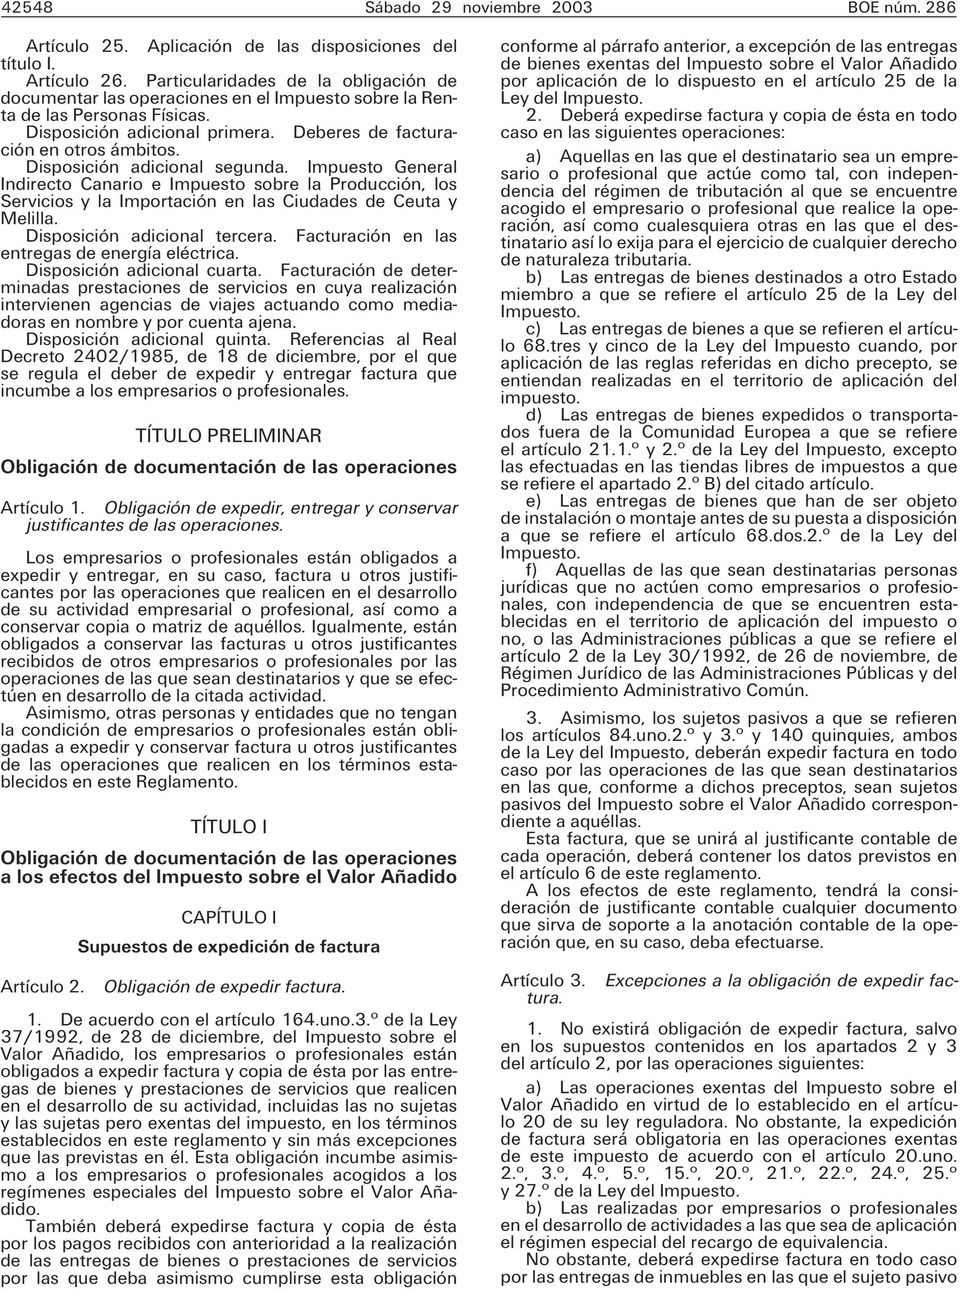 Disposición adicional segunda. Impuesto General Indirecto Canario e Impuesto sobre la Producción, los Servicios y la Importación en las Ciudades de Ceuta y Melilla. Disposición adicional tercera.